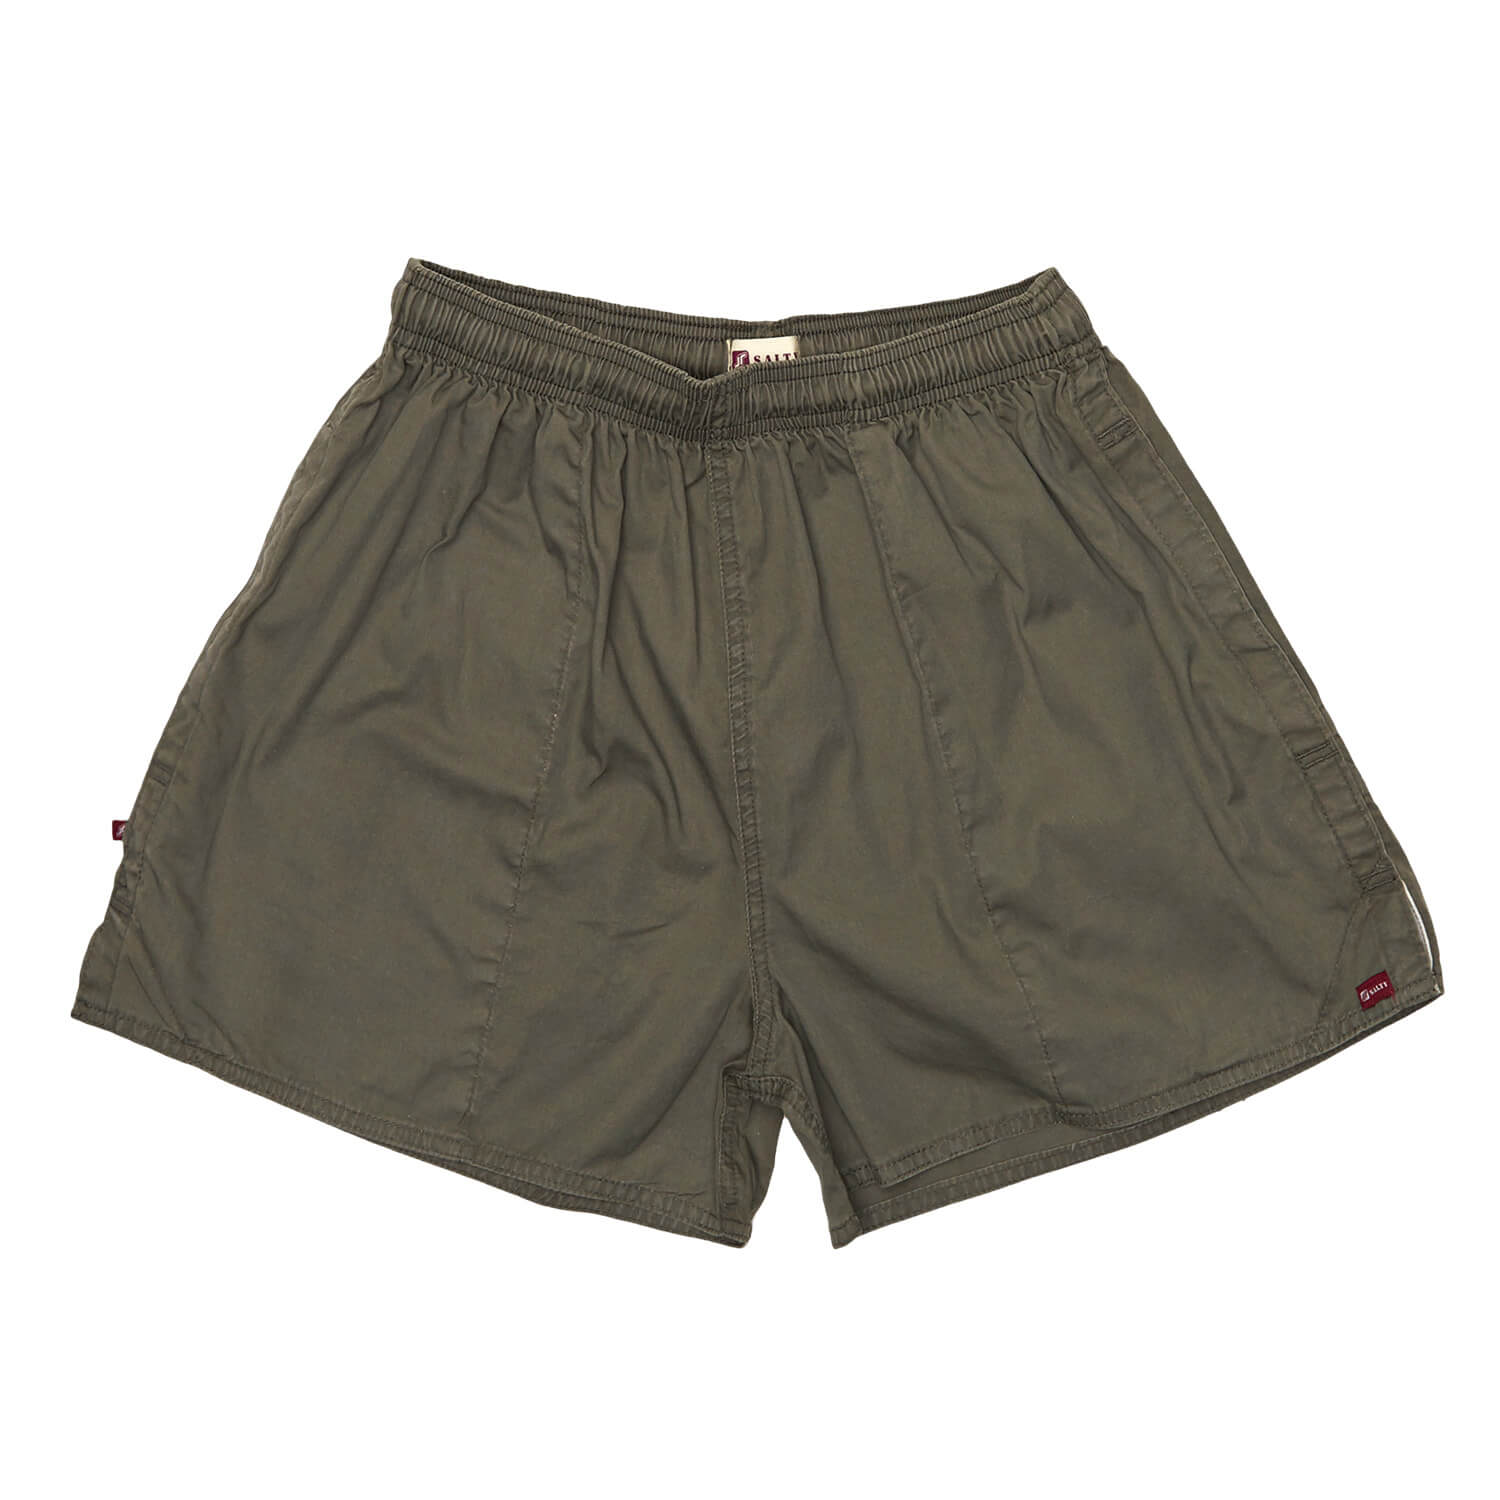 Salty Rhino PT Shorts: Stylish And Functional Athletic Wear - Yasuke Safety